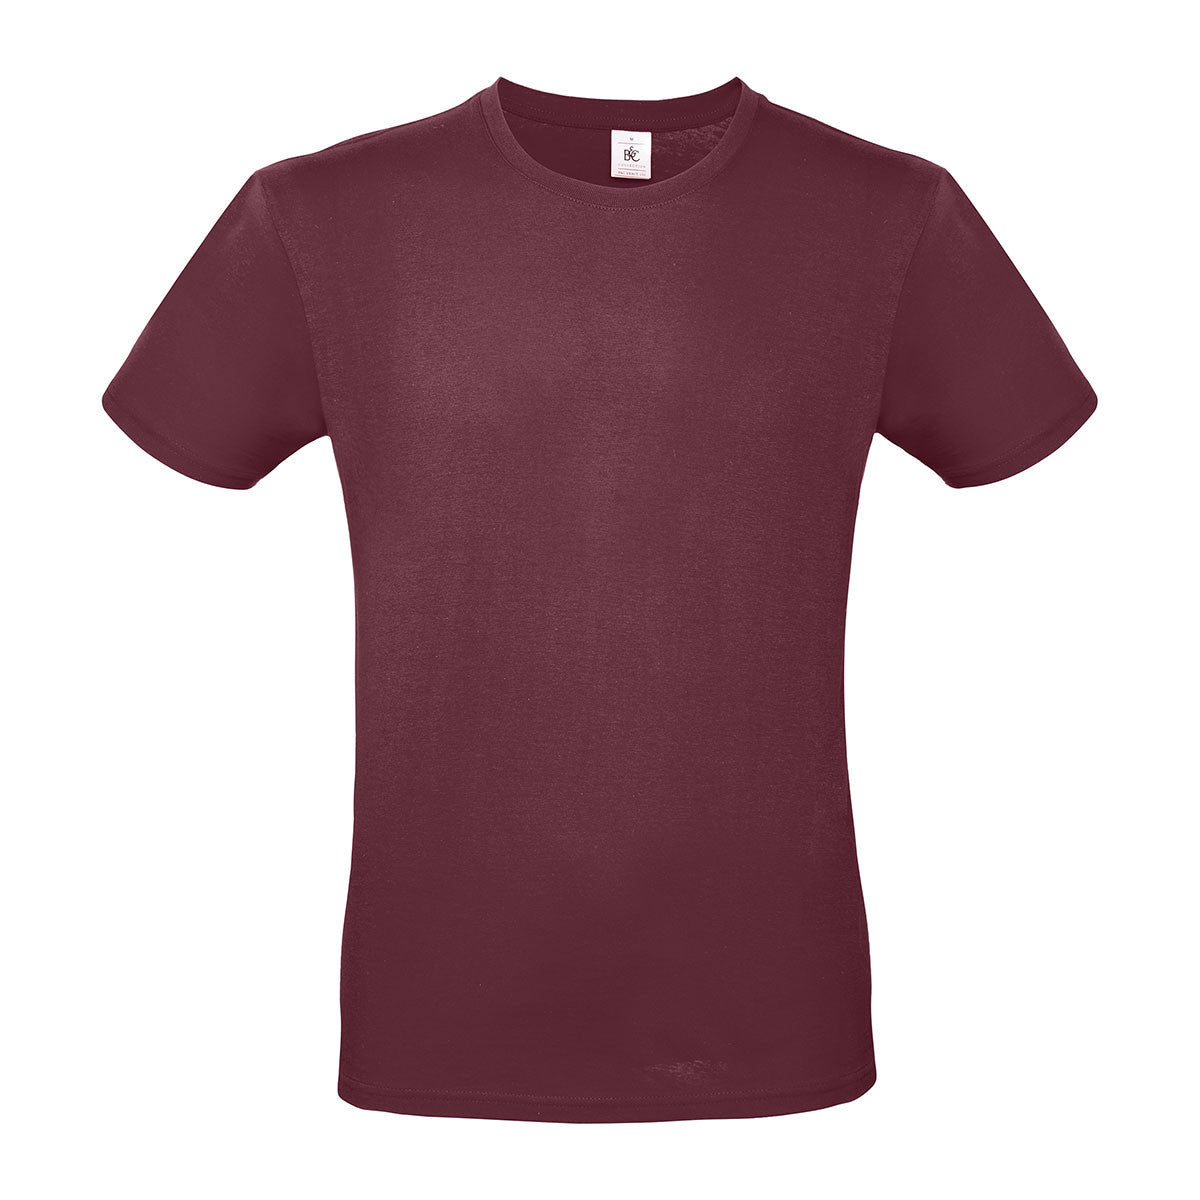 Budget T-Shirt (Men/Unisex) (Muster)